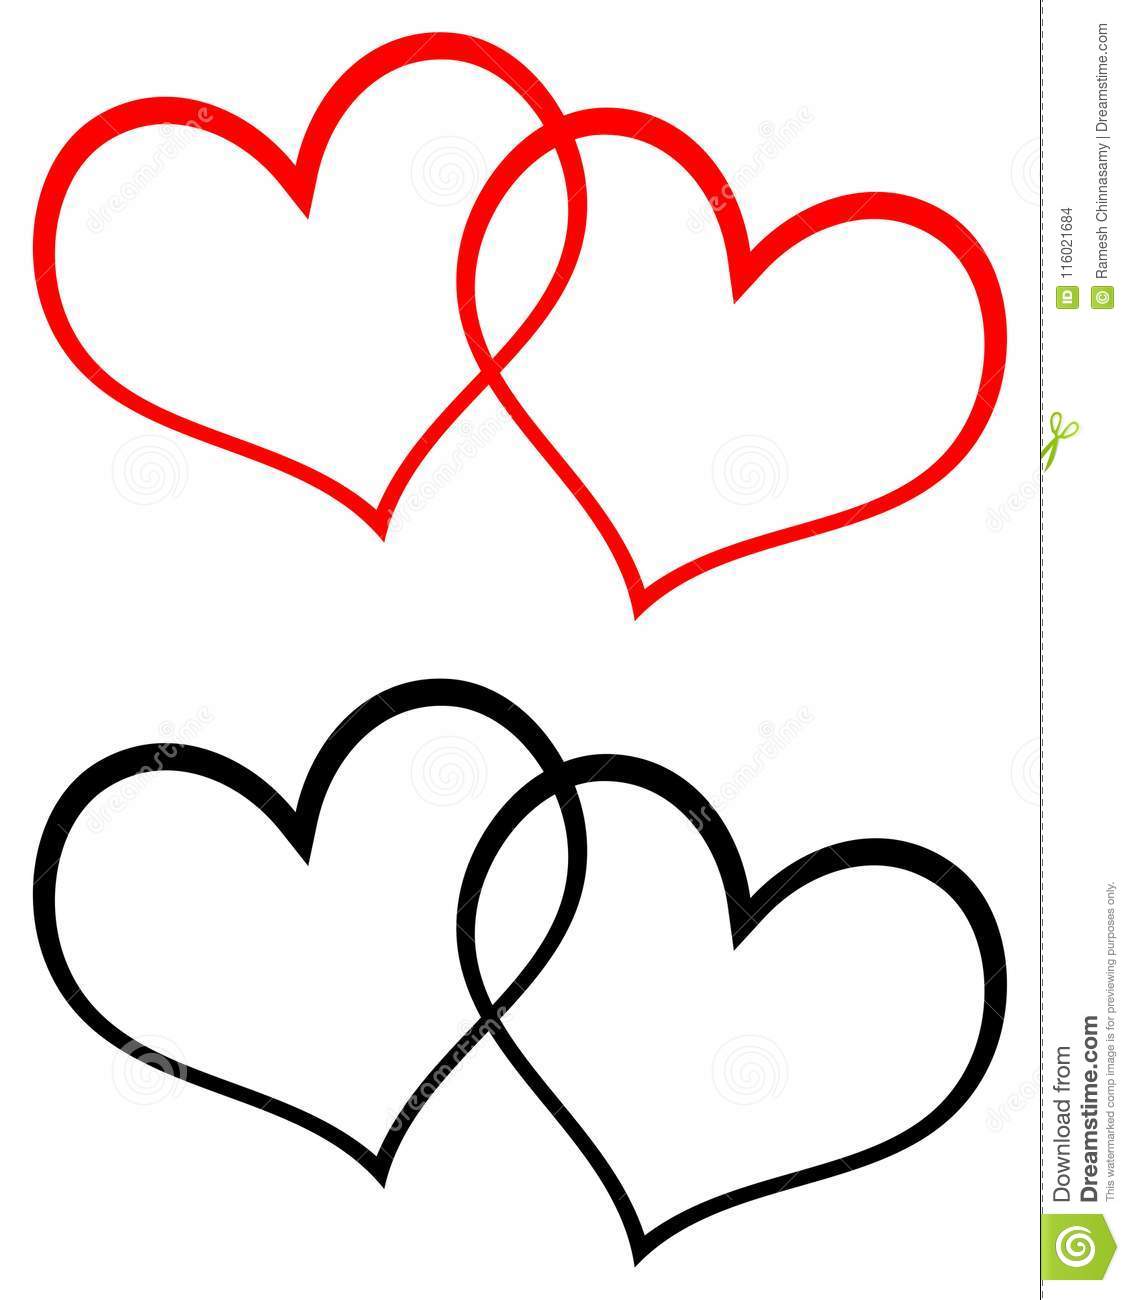 Two Hearts Clip Art At Clker Com Vector Clip Art Onli - vrogue.co